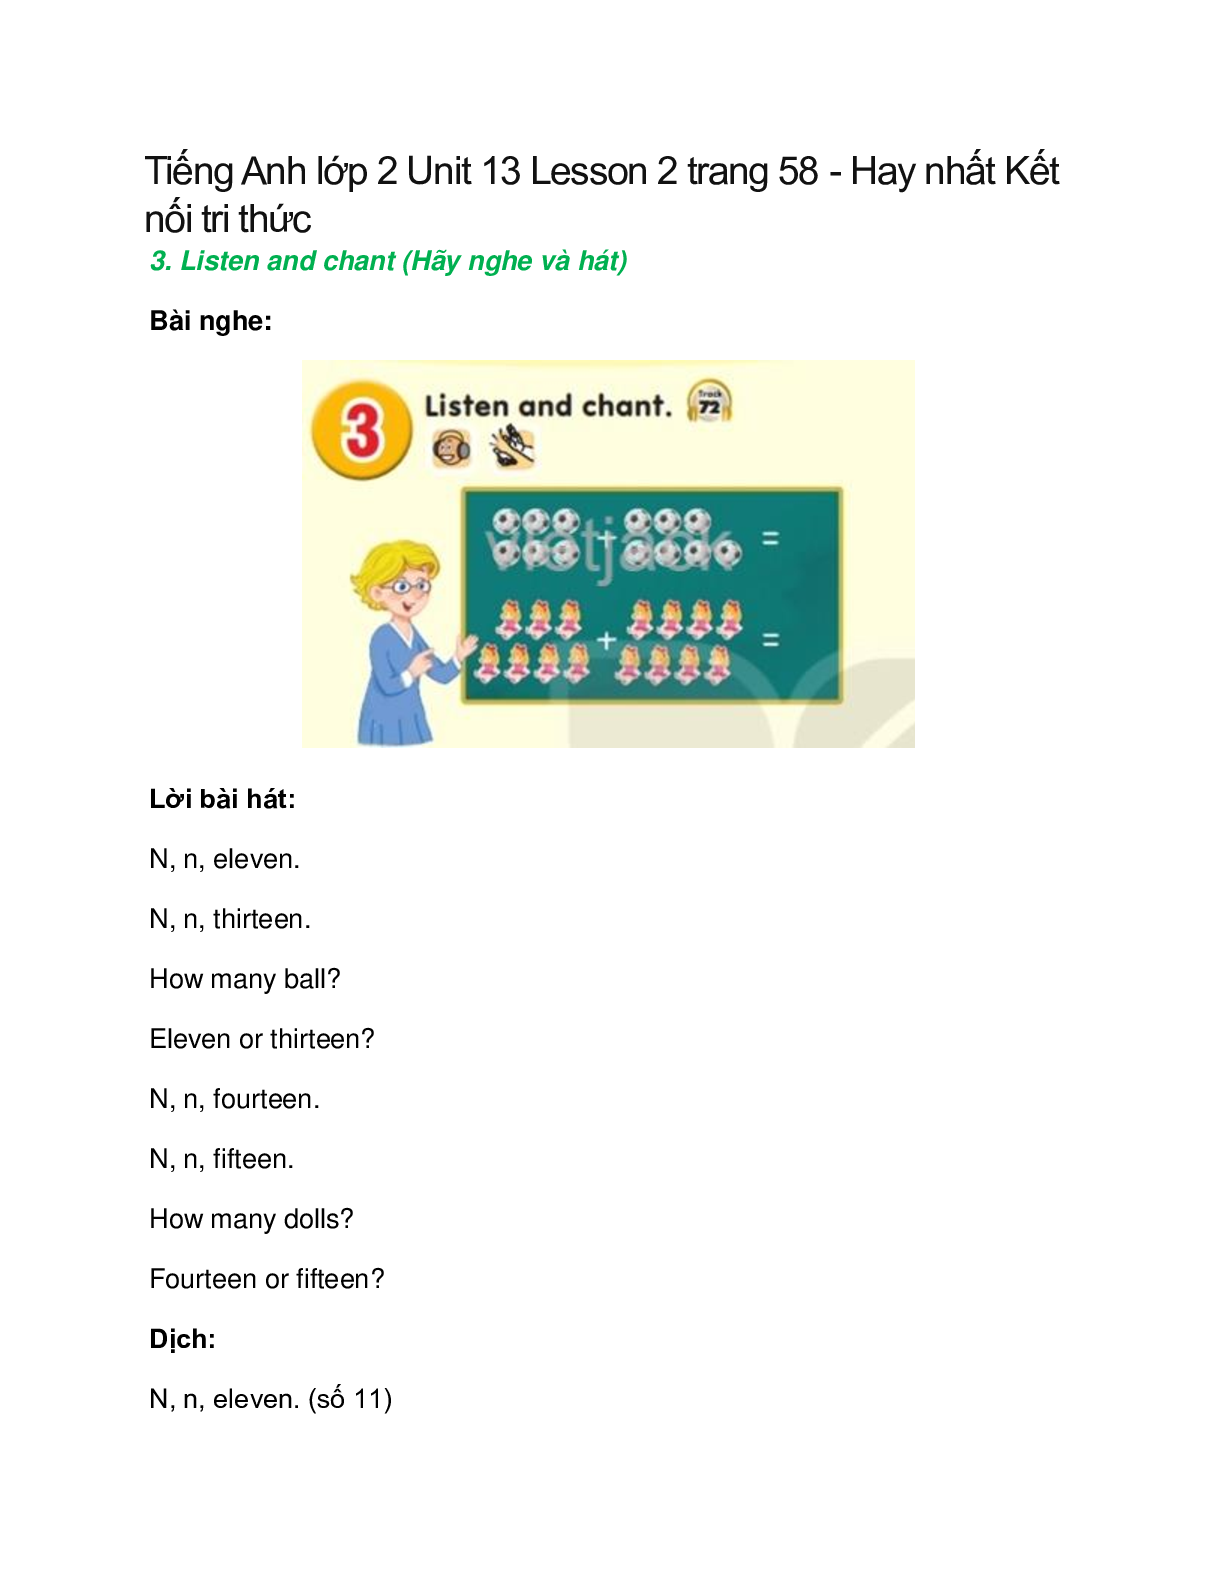 Tiếng Anh lớp 2 Unit 13 Lesson 2 trang 58 – Kết nối tri thức (trang 1)